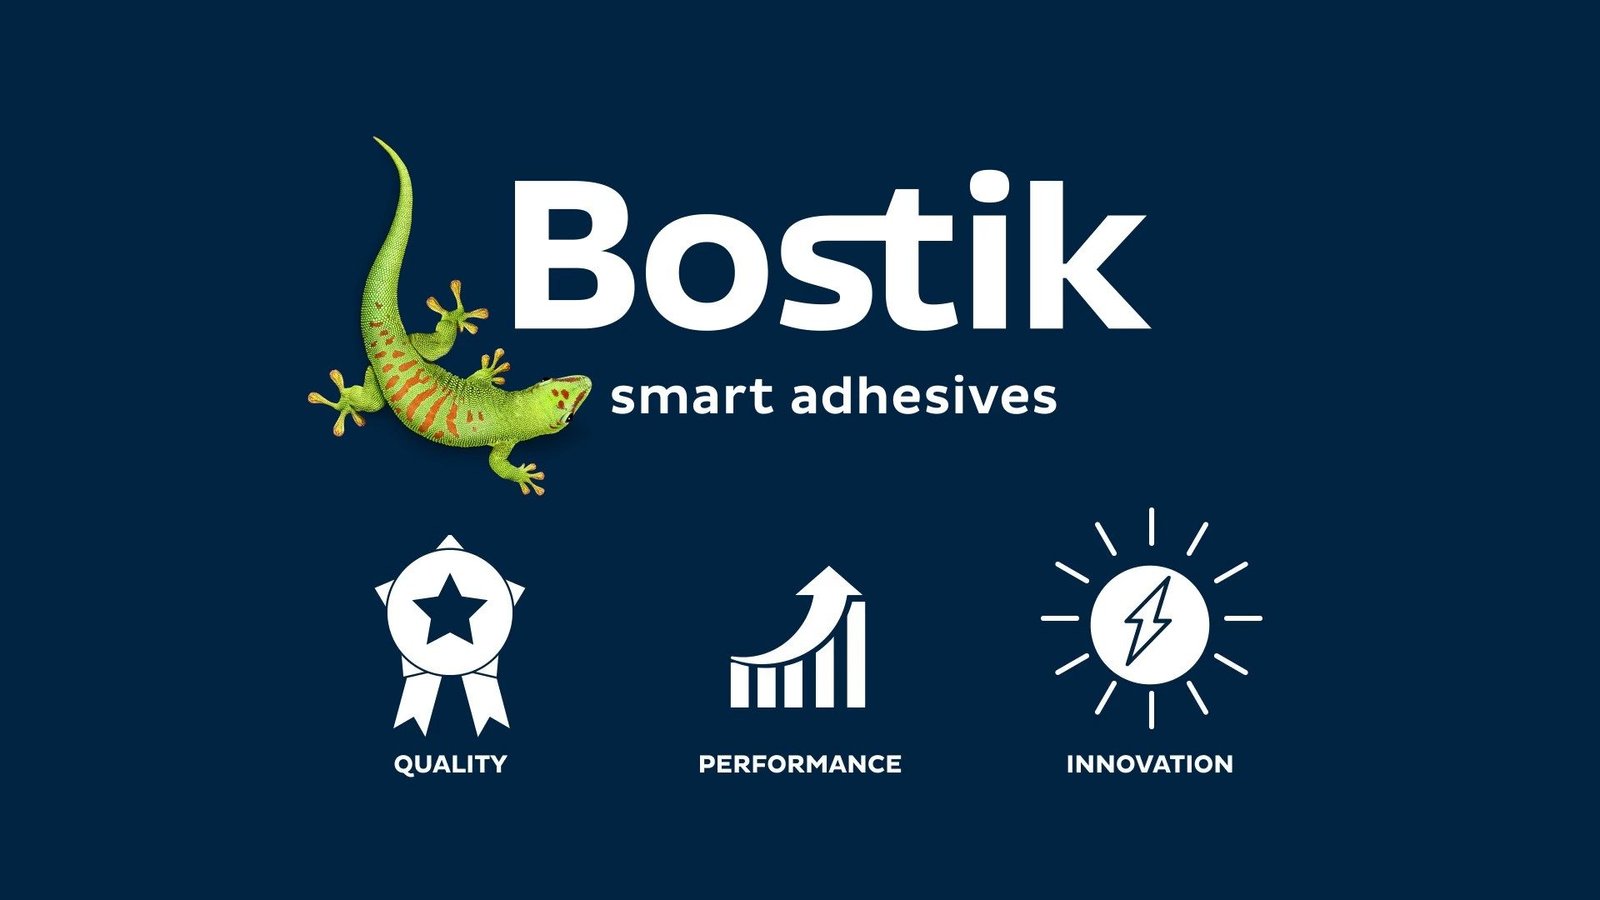 logo bostik et icones qualité performance et innovation